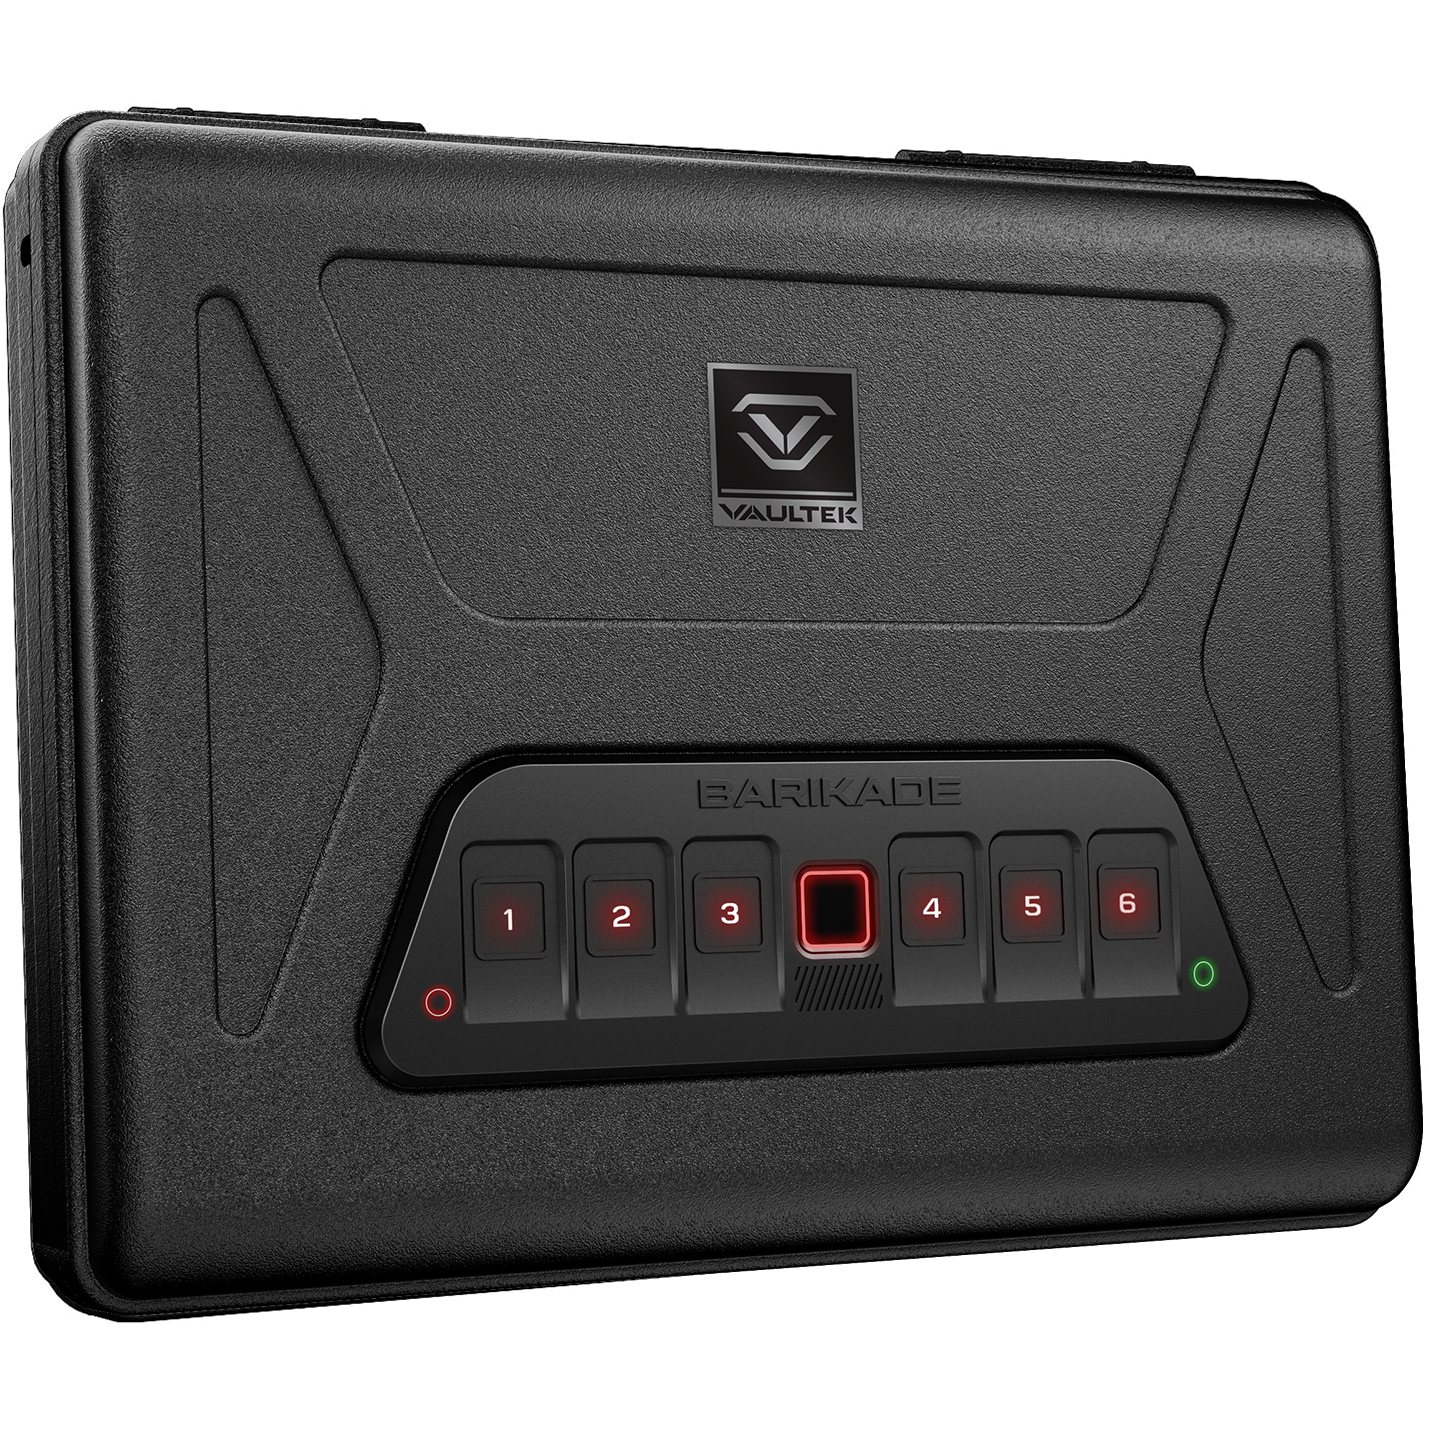 Vaultek - barikade series 2 precision built safe with biometric scanner and backlit keypad - MODLOCK